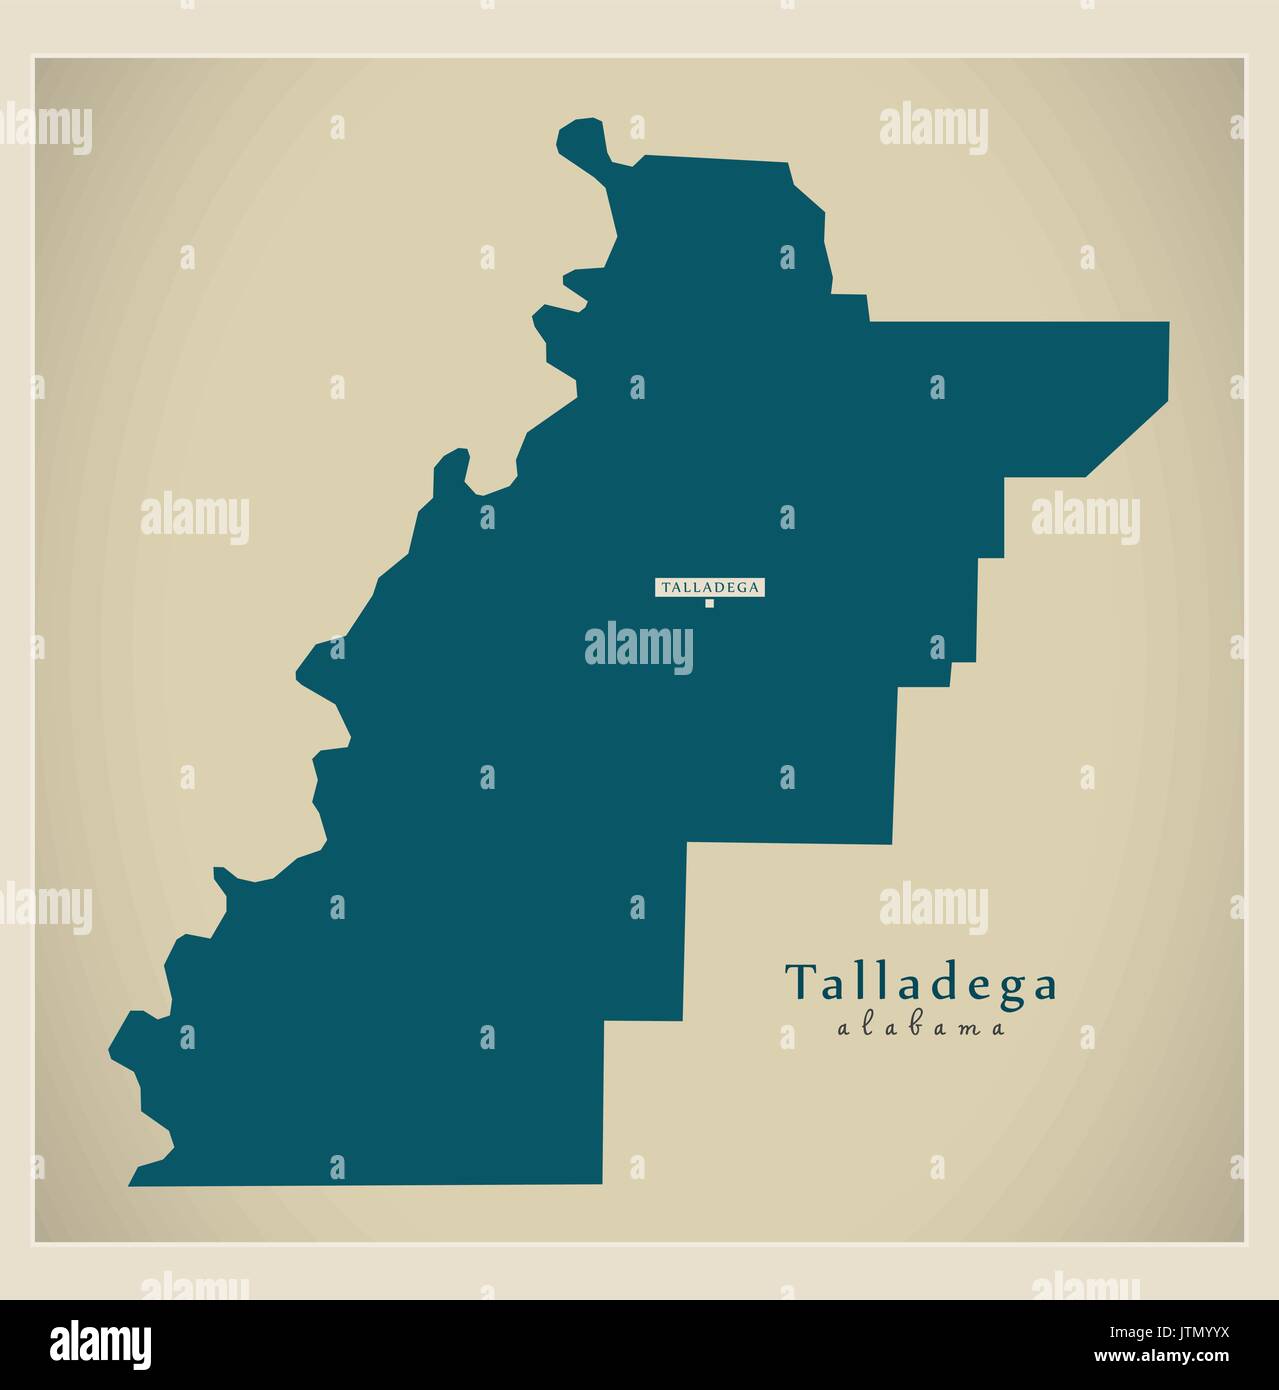 Mappa moderno - Talladega Alabama county USA illustrazione Illustrazione Vettoriale